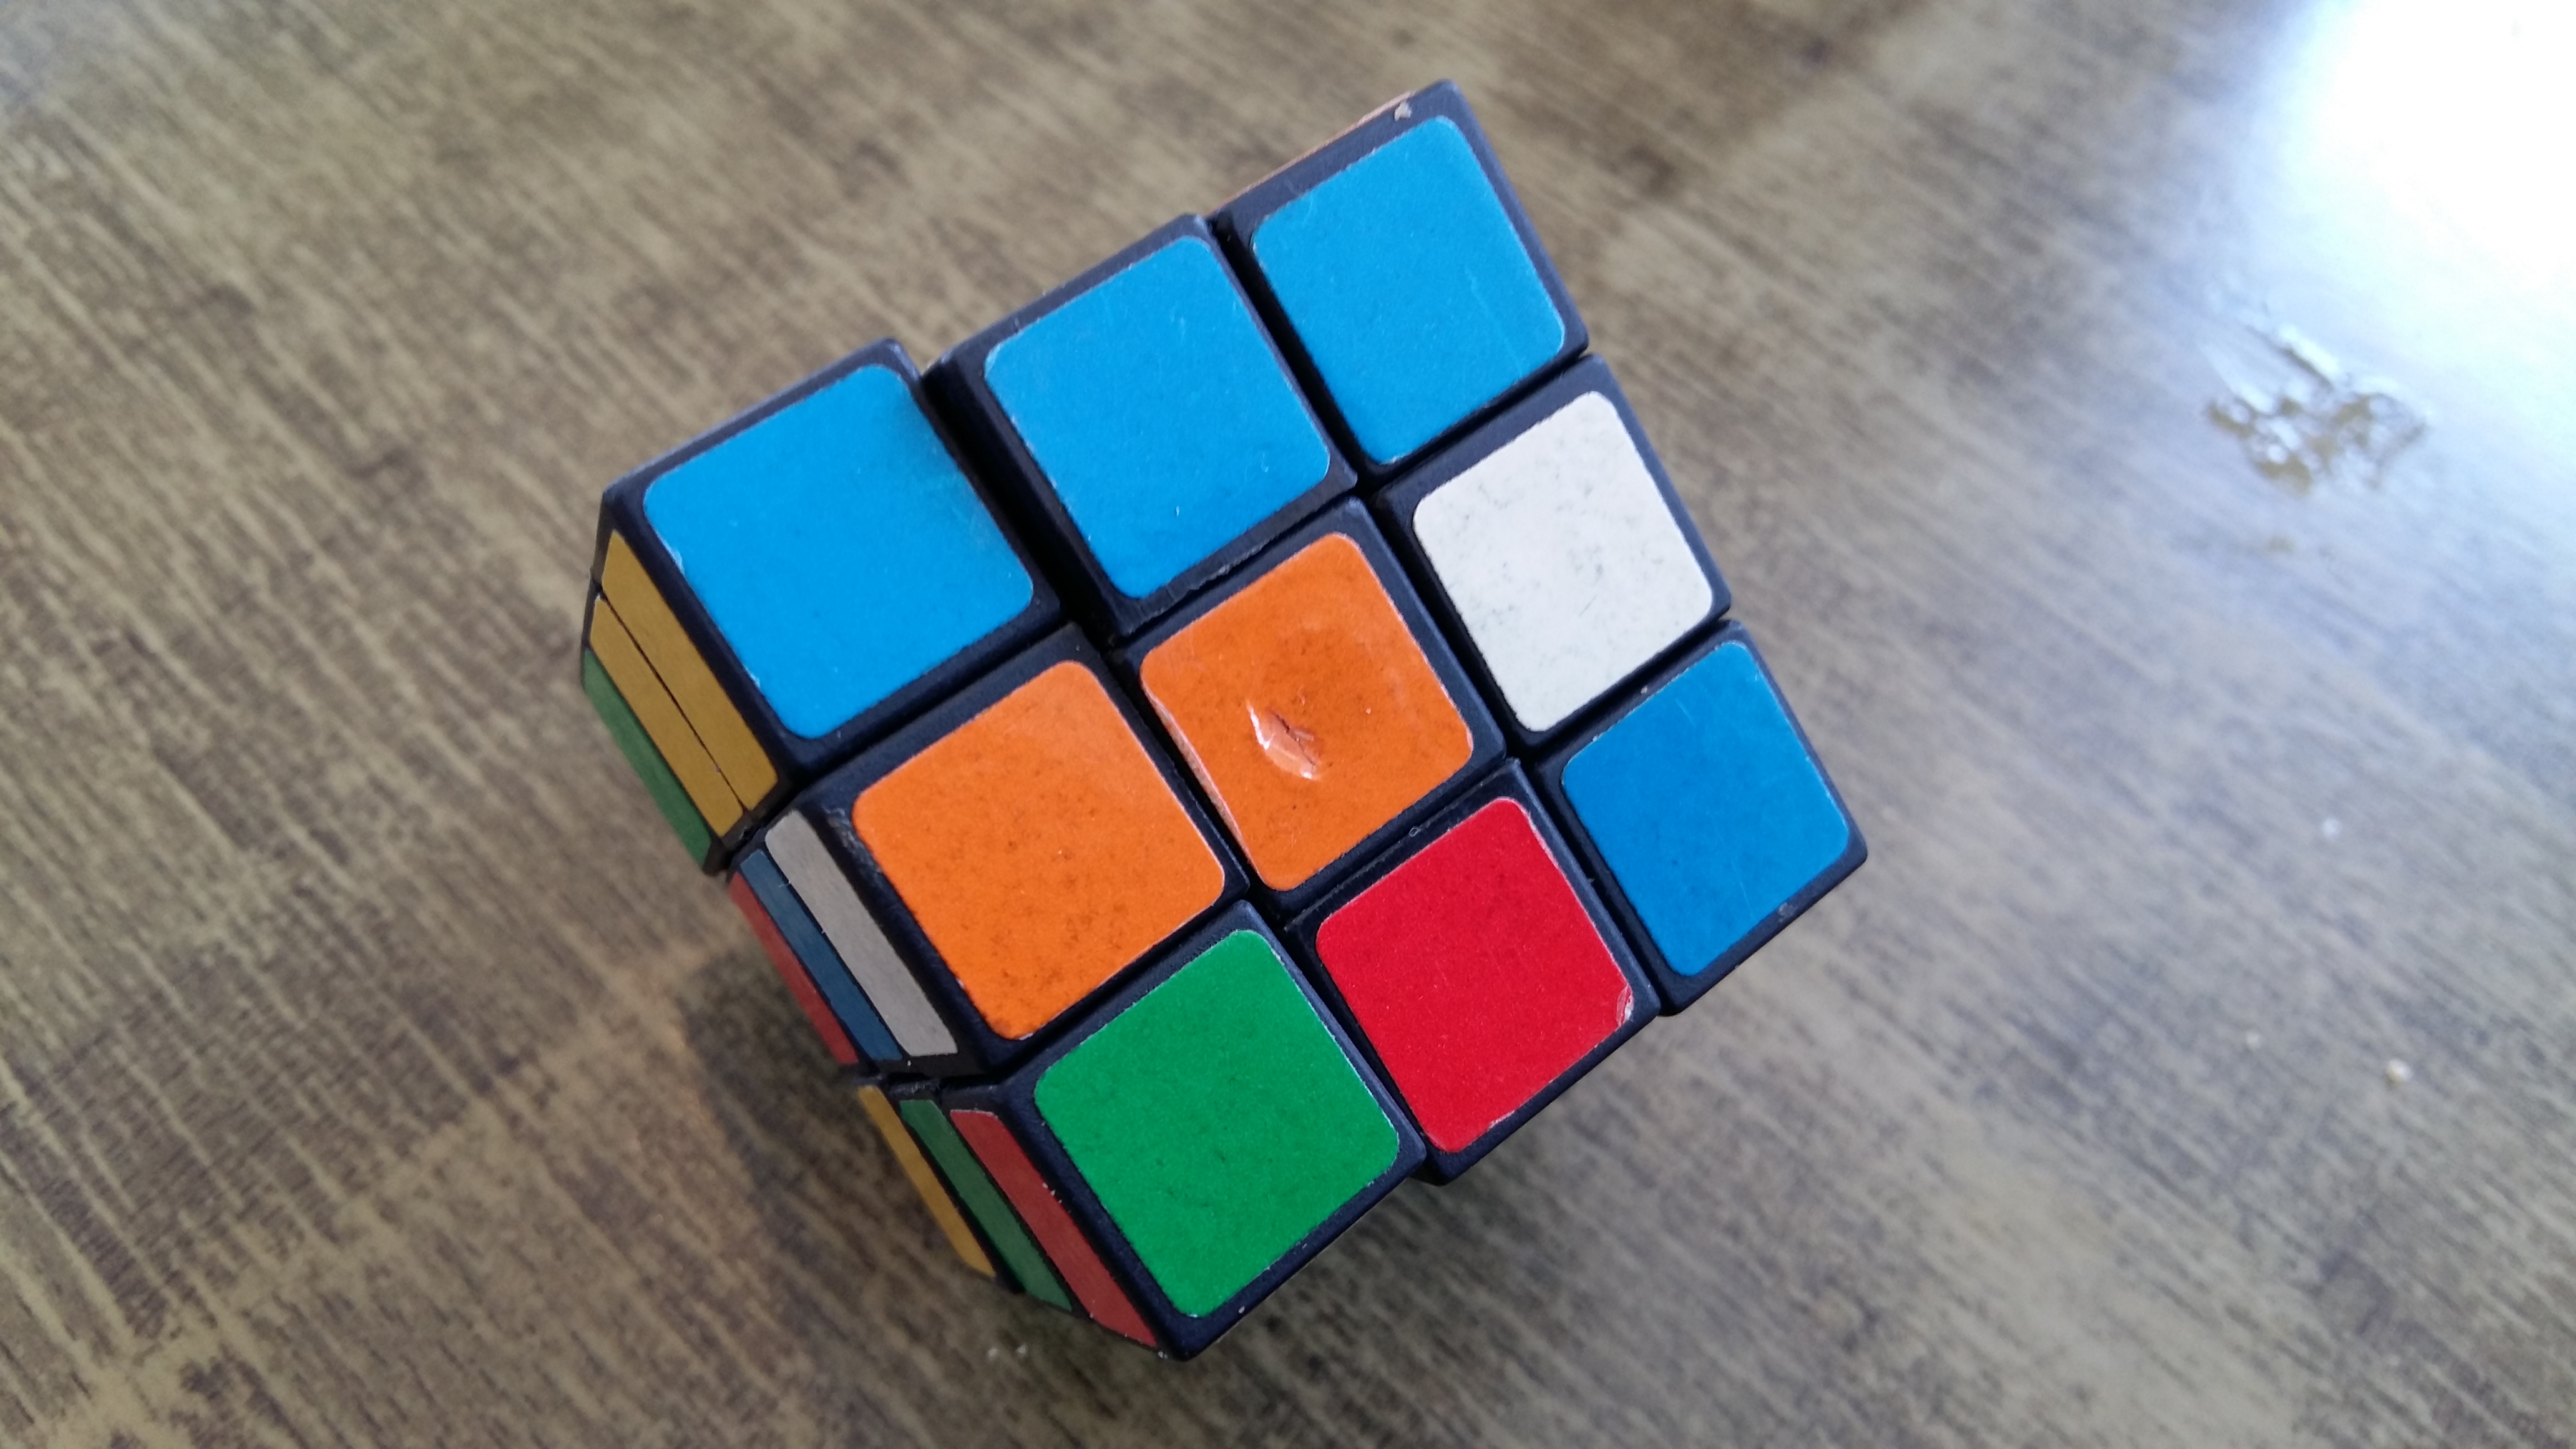 3x3x3 Rubik